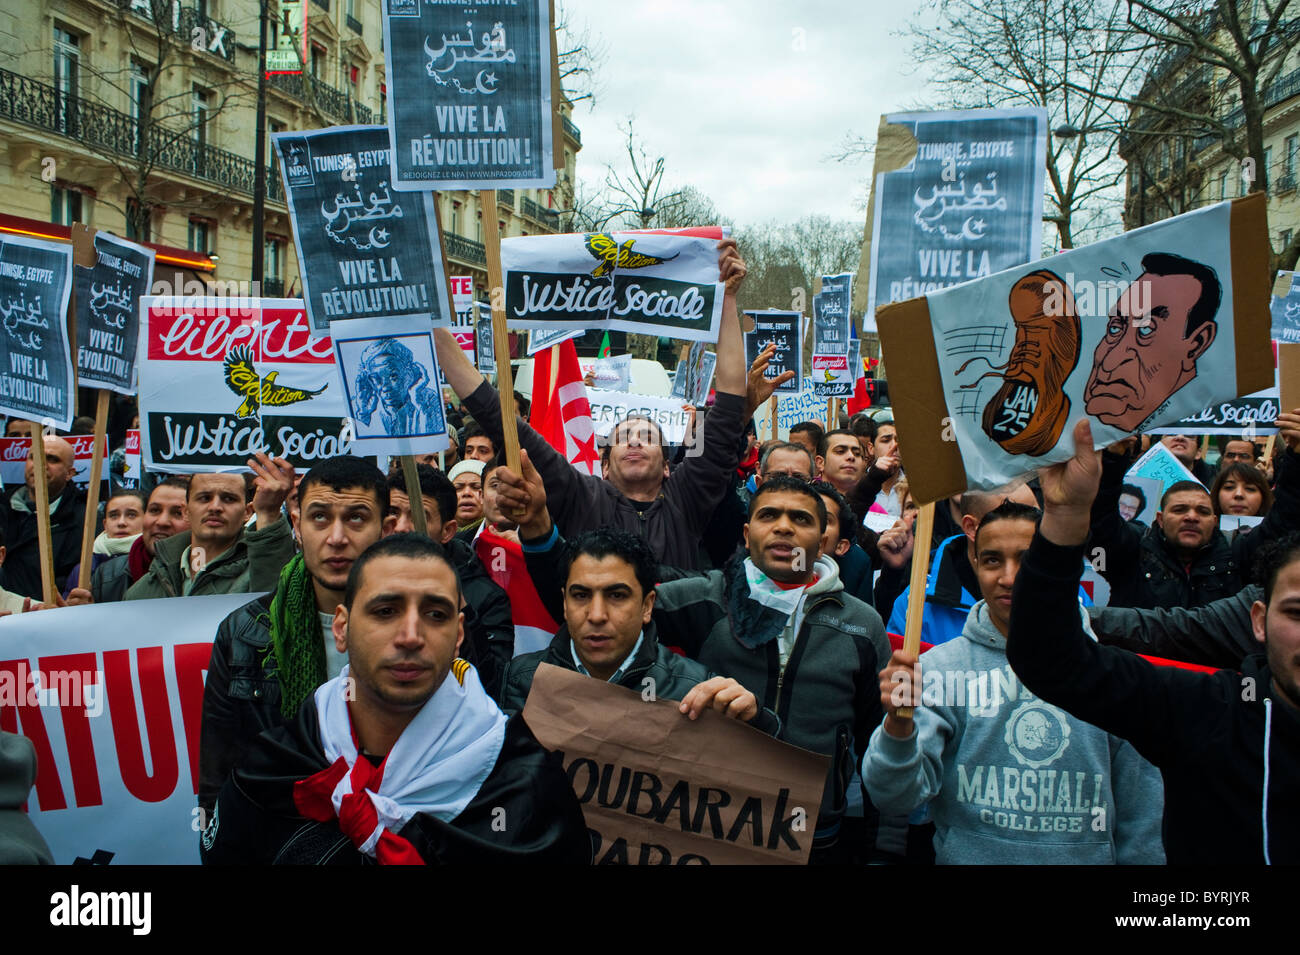 Paris, France, manifestants égyptiens protestant contre Hosni Moubarak, extérieur, foule, hommes marchant avec des signes de protestation, printemps arabe, politique Banque D'Images